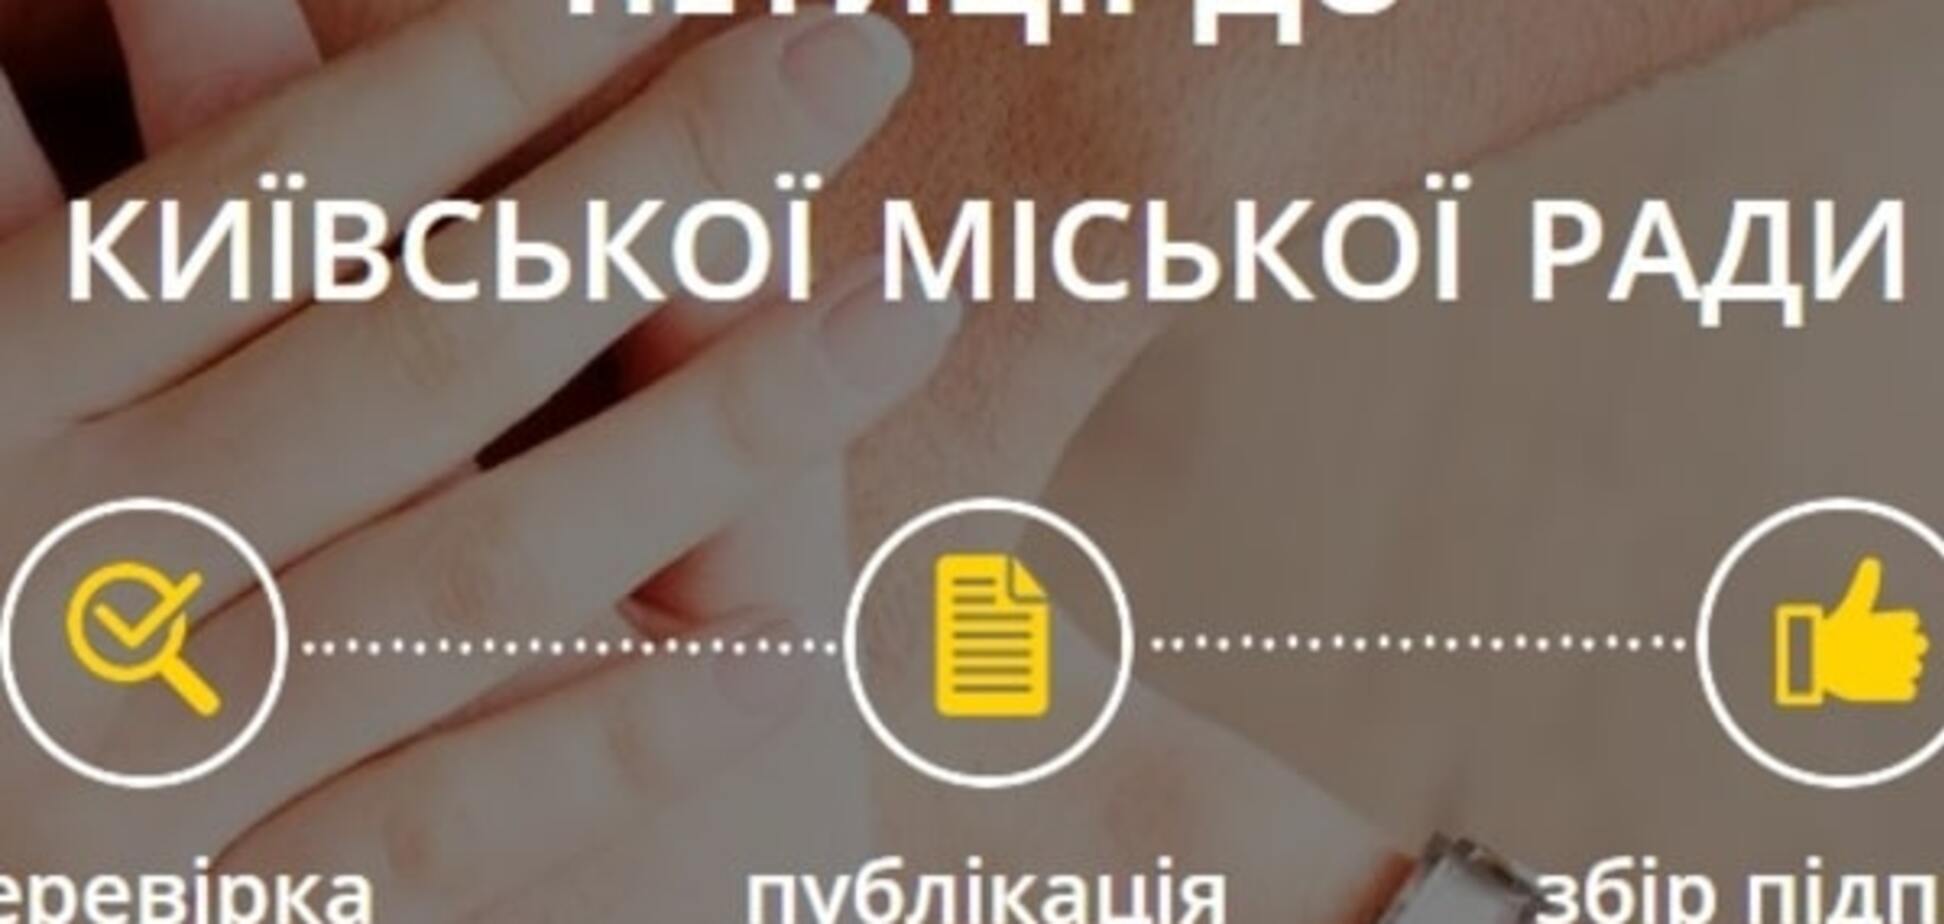 Киеврада начала принимать электронные петиции от граждан